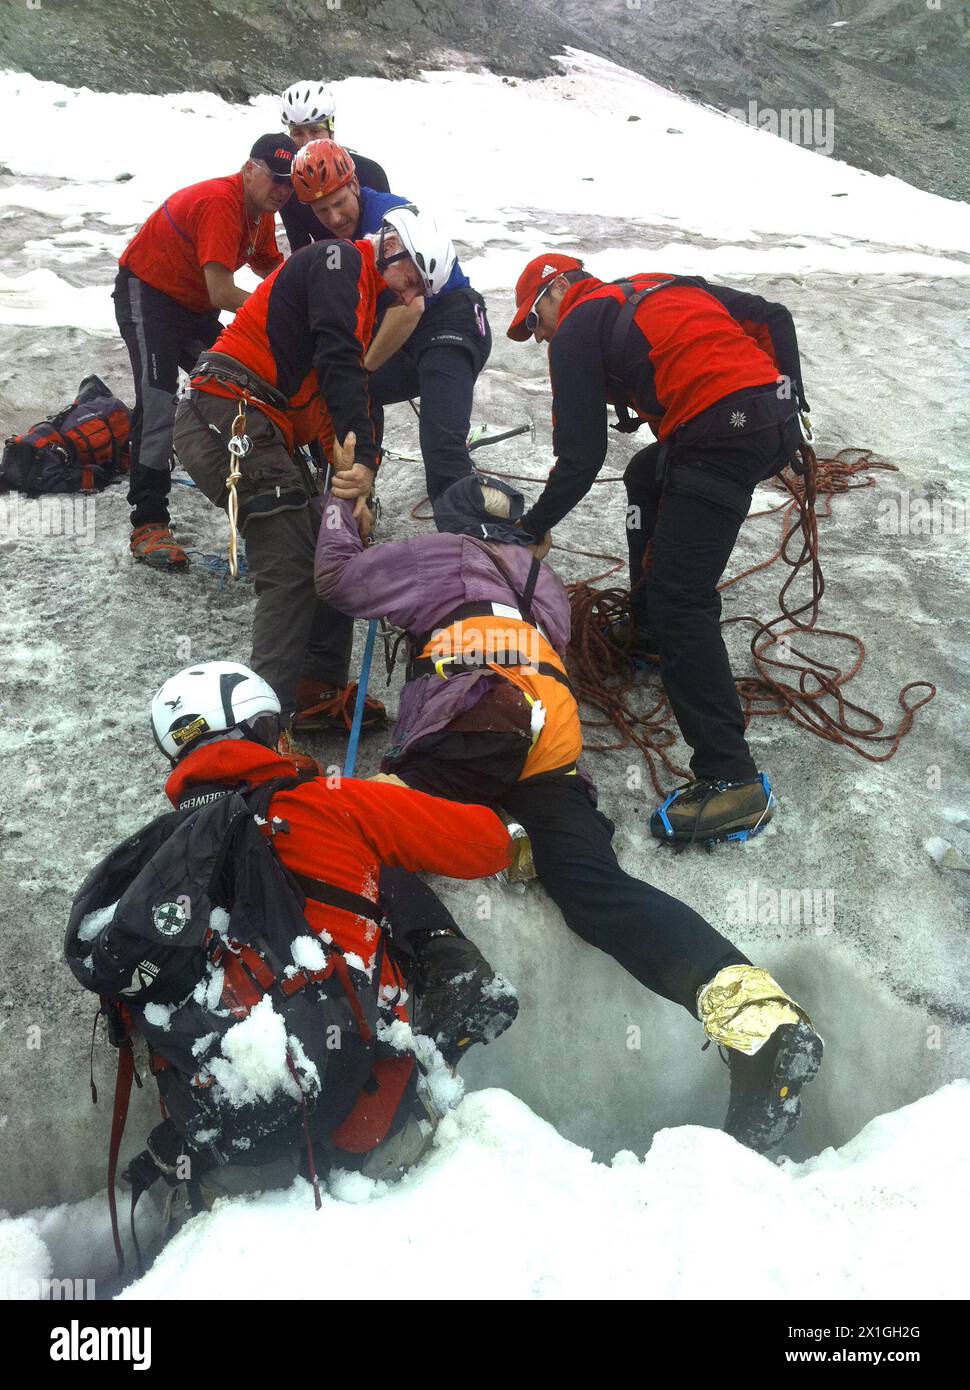 Ein deutscher Bergsteiger wird am 14. August 2012 von Bergrettungskräften am Schrankogel in Tirol gerettet. Ein Mann überlebte eine Woche innerhalb eines österreichischen Gletschers, nachdem er einen 20 Meter langen Eisbruch heruntergefallen war, berichtete die österreichische Presseagentur APA. Der 70-jährige Mann aus Deutschland wurde bei niedriger Körpertemperatur und erschöpft aus der Gletscherspalte in Tirol gerettet, aber mit nur leichten Verletzungen, zitierte die APA einen Polizisten. - 20120814 PD1151 - Rechteinfo: Rights Managed (RM) Stockfoto